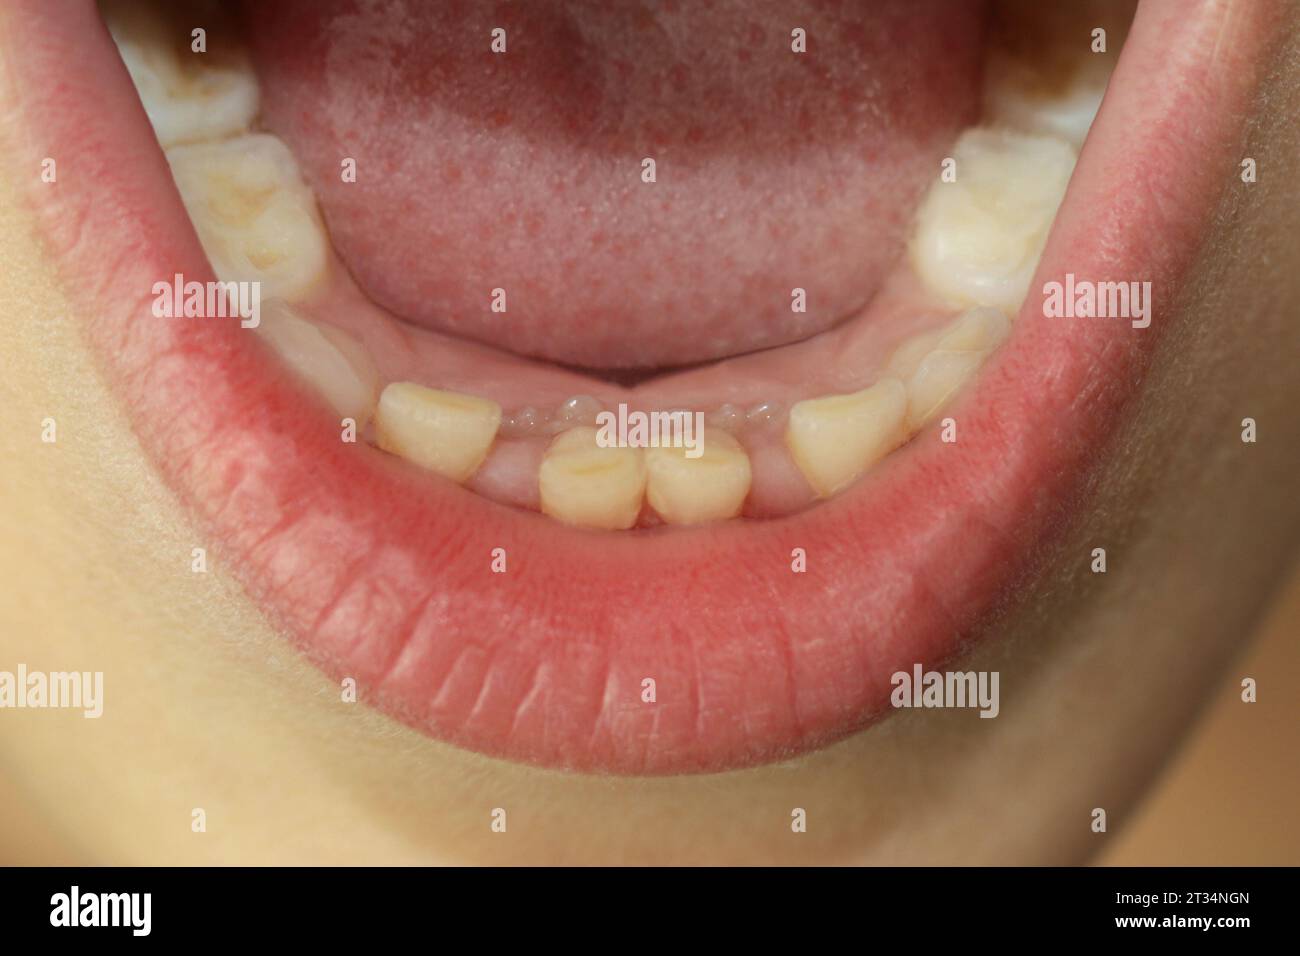 Les dents permanentes d'un enfant poussent à côté des dents de bébé qui ne sont pas tombées. Deuxième rangée de dents. Dentisterie. Un concept médical. Les dents changent. Fermer Banque D'Images